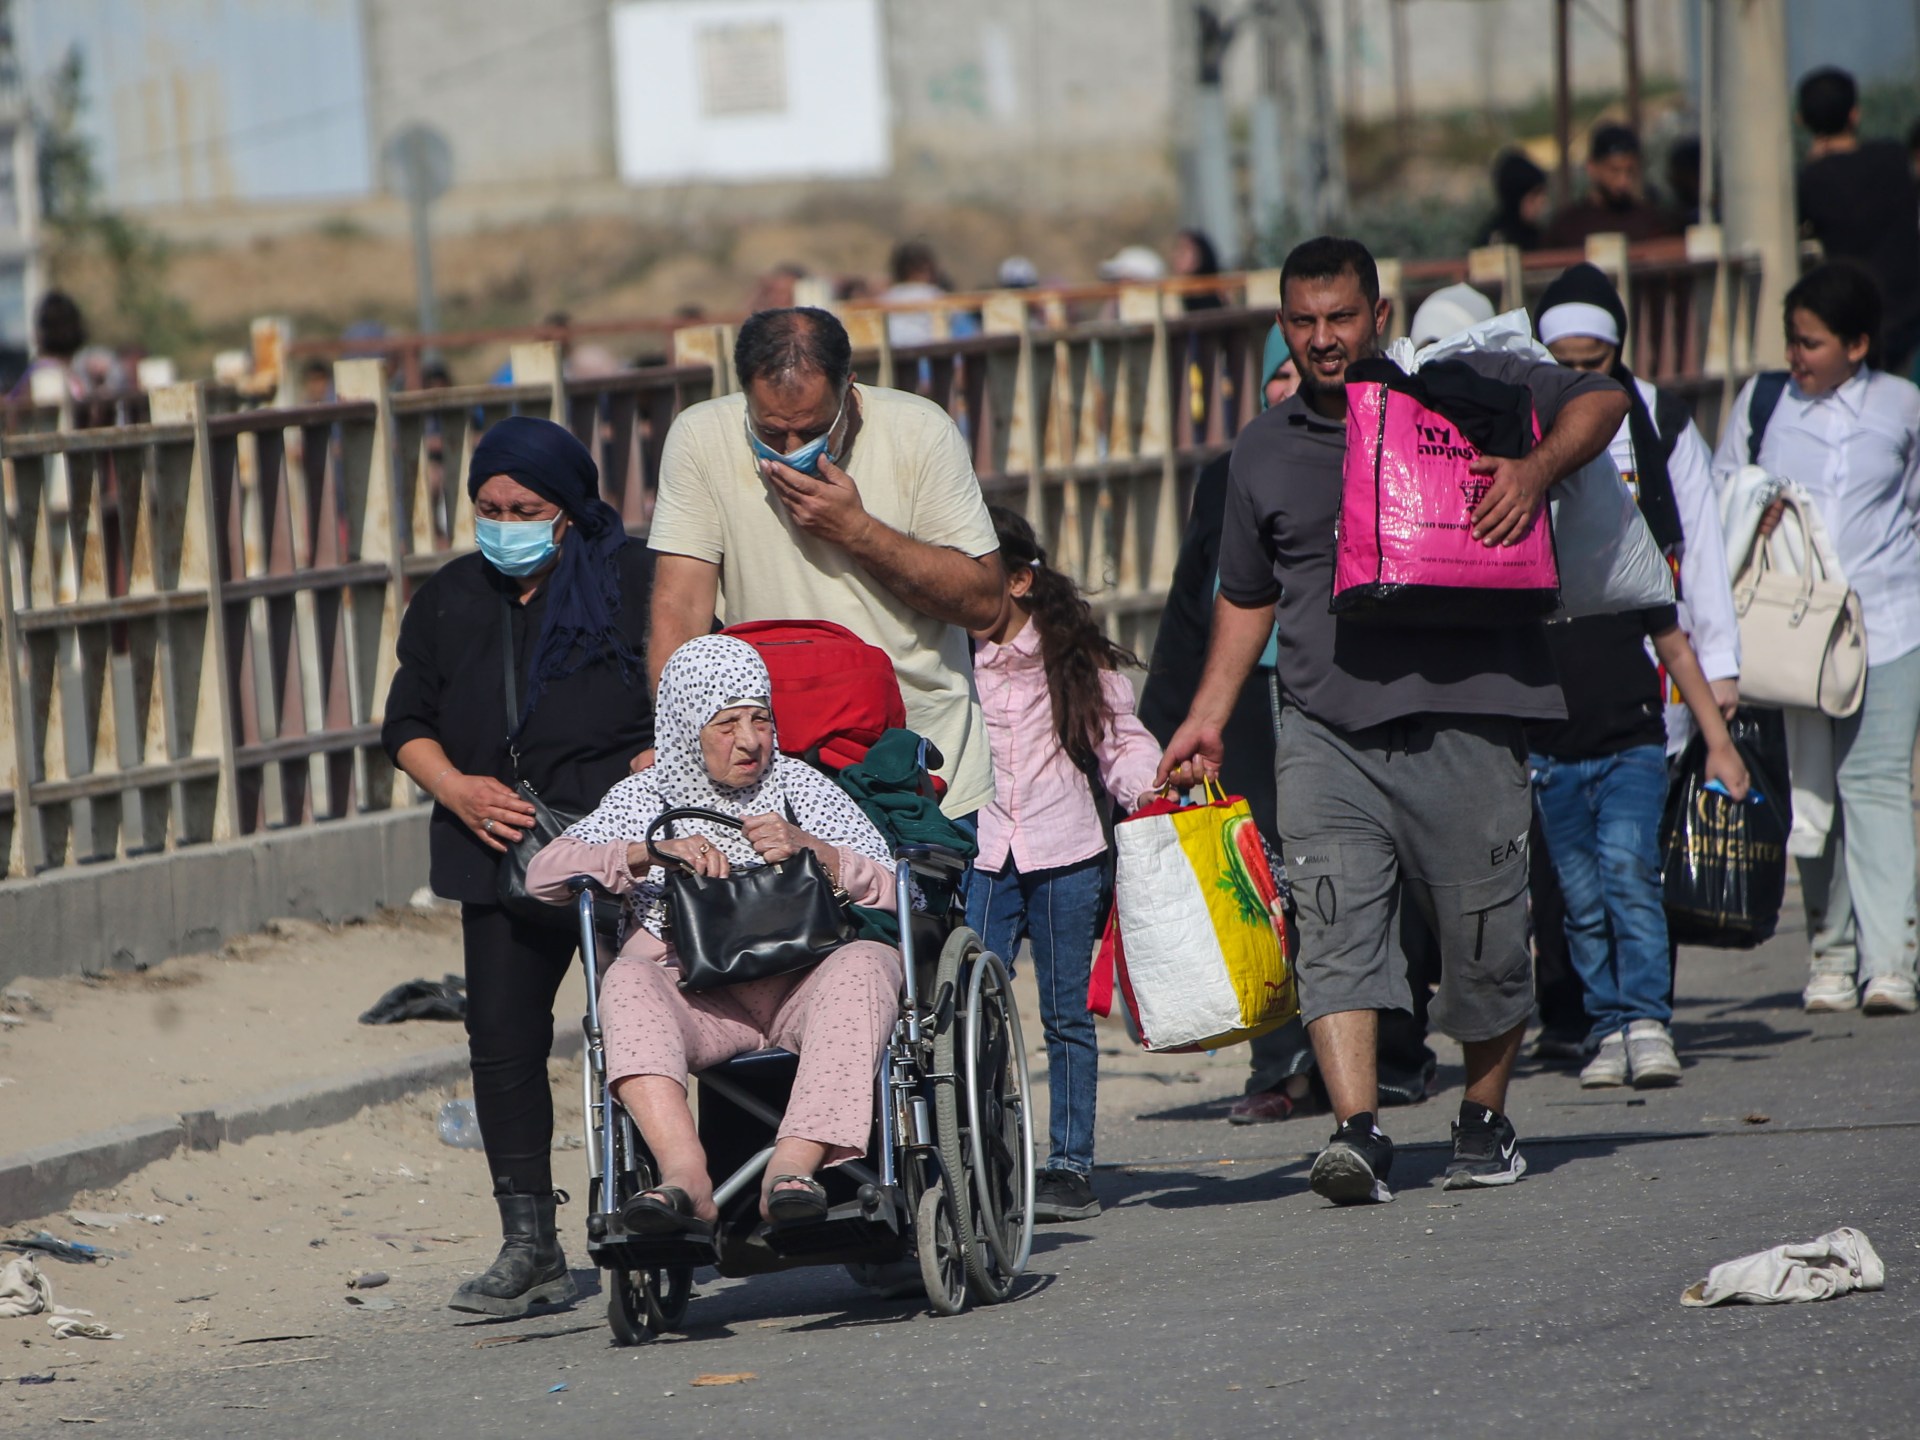 جيش الاحتلال يدعو سكان أحياء بجنوب قطاع غزة لإخلاء منازلهم | أخبار – البوكس نيوز